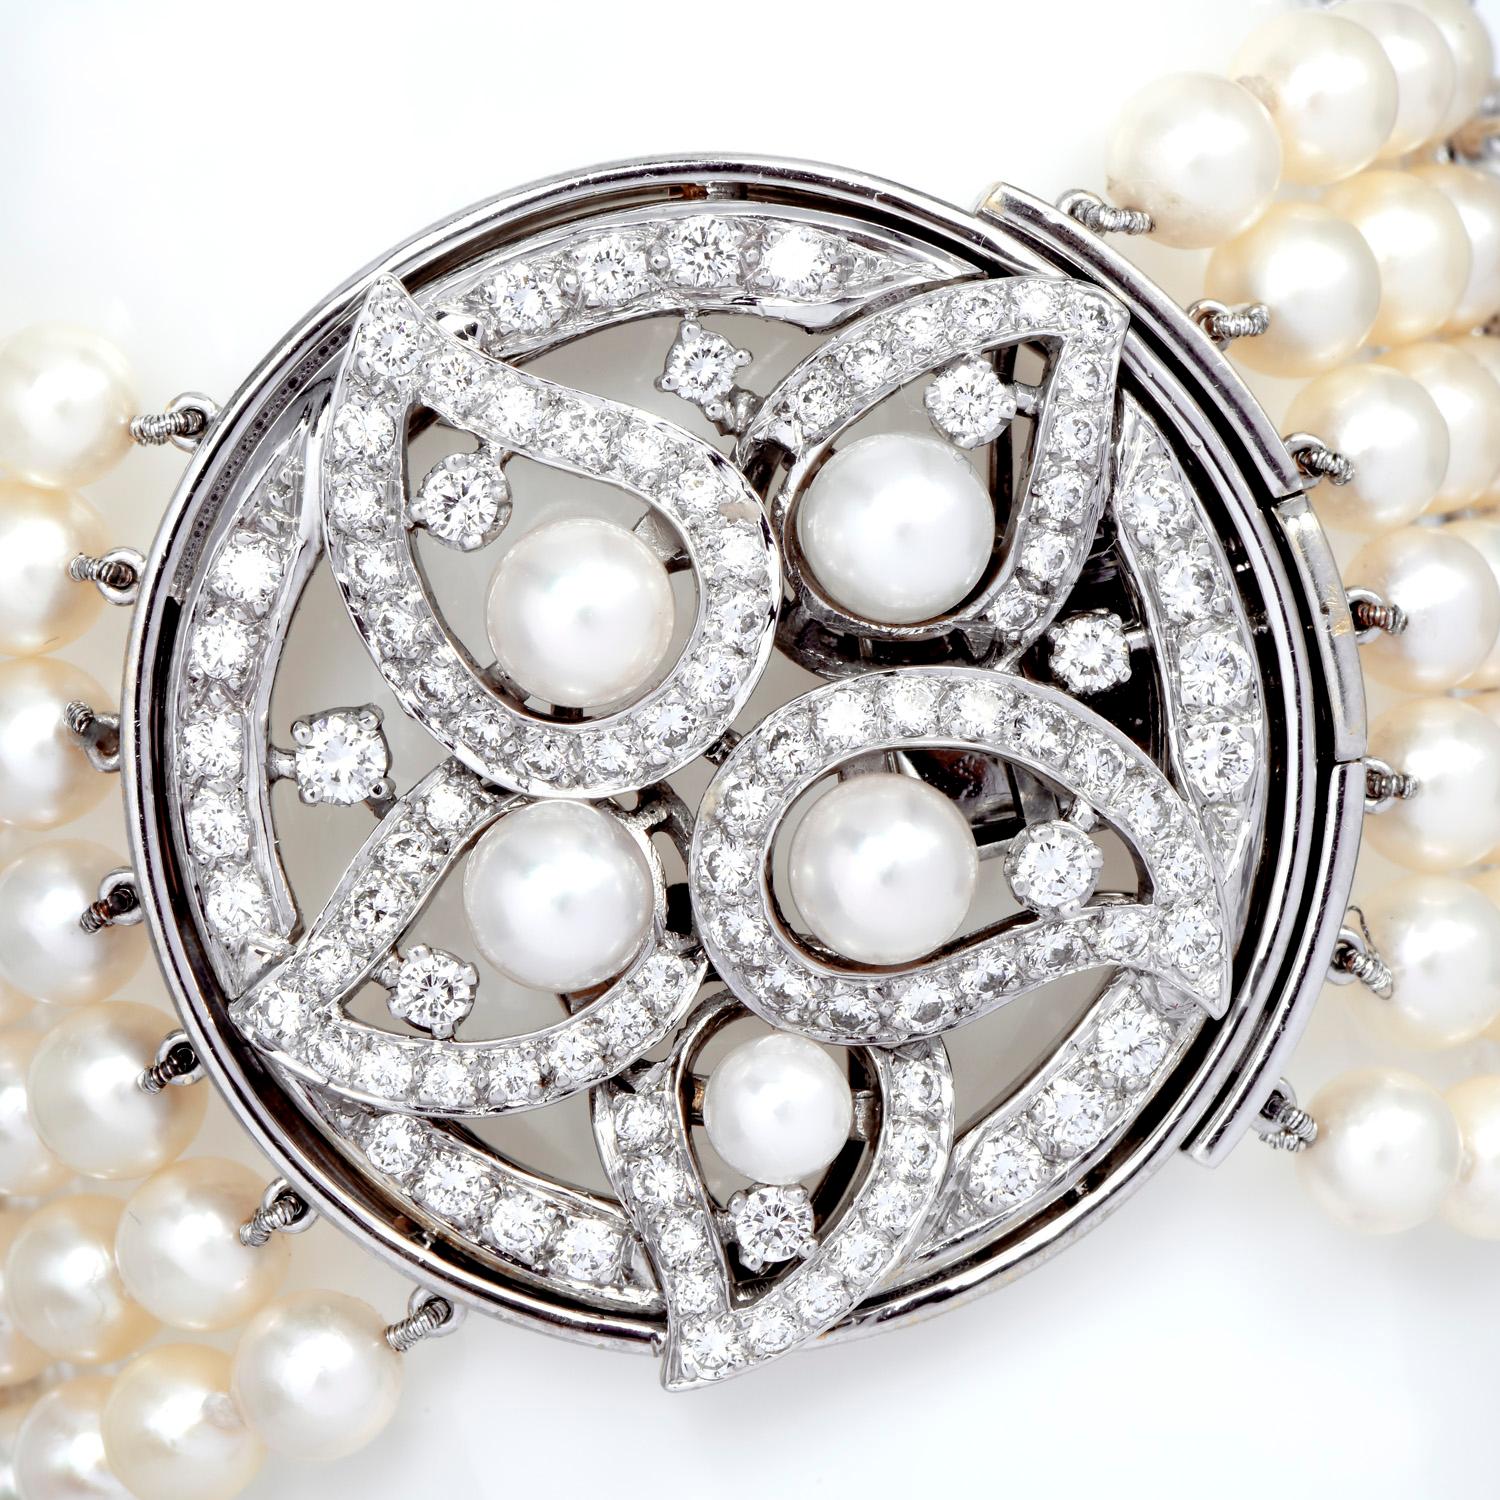 Luxuriöses und elegantes breites Perlen- und Diamantarmband aus 7 Strängen von 6,5 mm Akoya-Perlen mit cremefarbenen Untertönen, hohem Glanz und kleinen Schönheitsfehlern.

Dieses Schmuckstück wurde von der New Yorker Designerin Ella Gafter